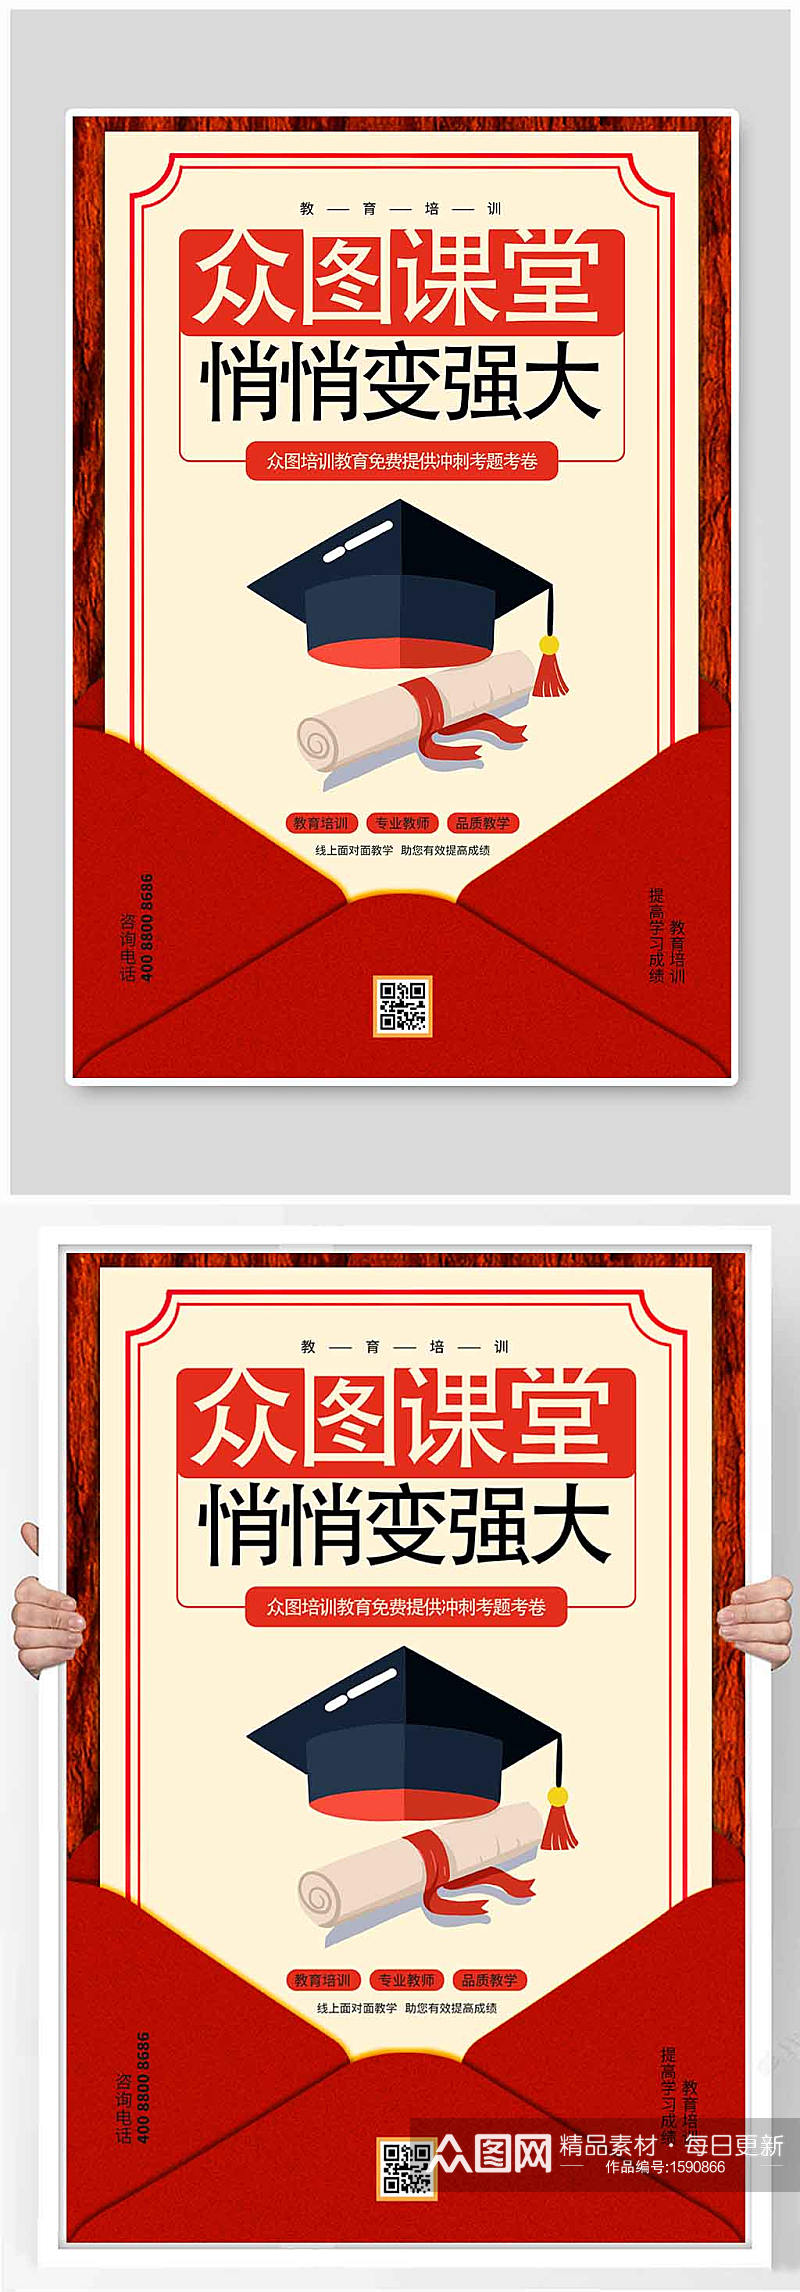 红色信纸教育培训海报设计素材